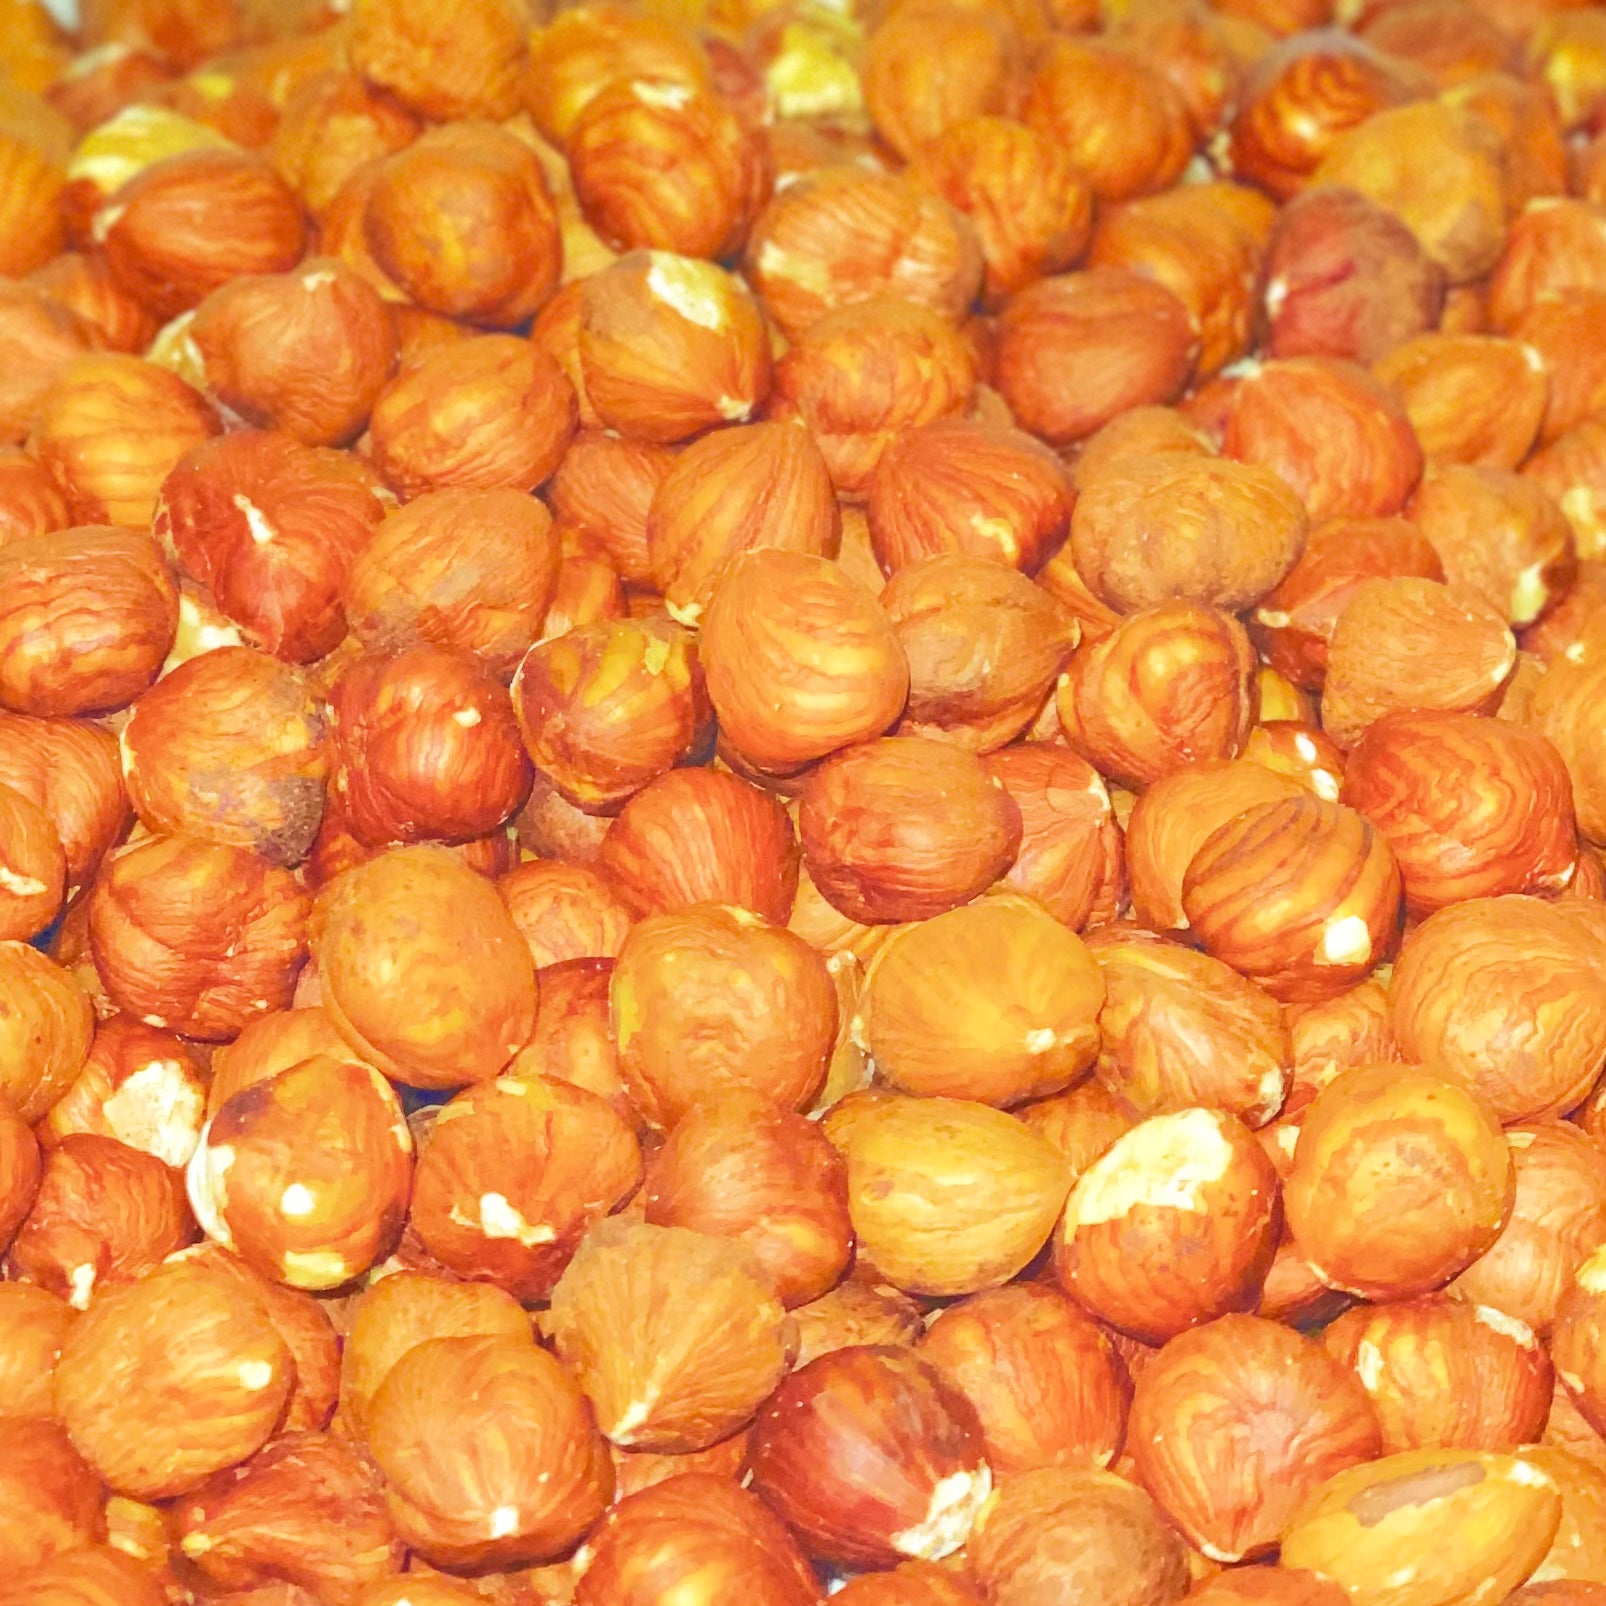 Filberts, Domestic, Whole Natural Hazelnuts (Raw)